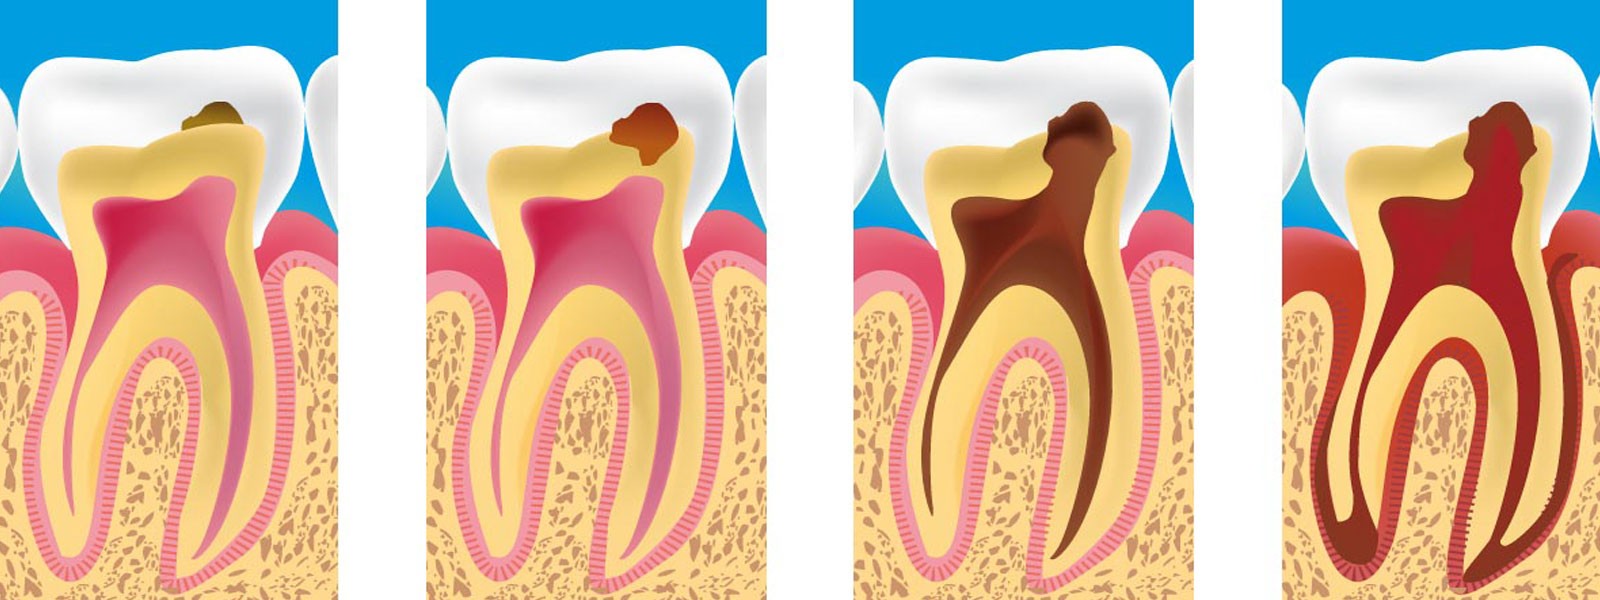 Quando a cárie atinge do esmalte, os dentes podem se tornar sensíveis. 
Leia mais